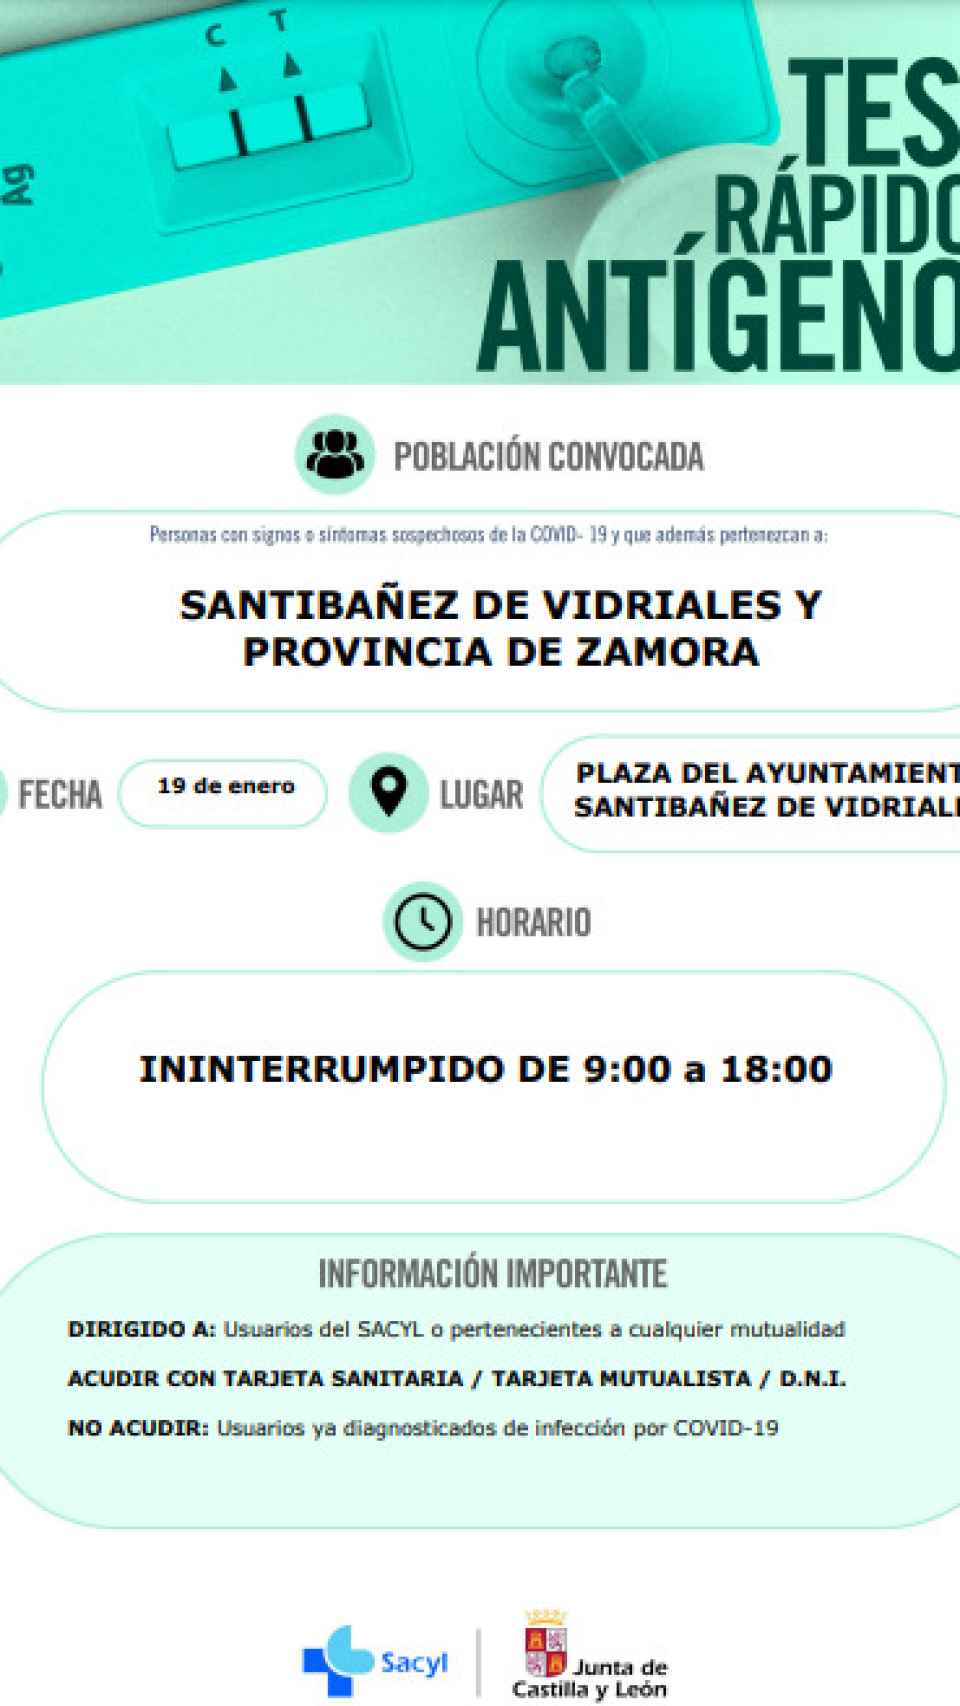 Convocatoria de antígenos en Zamora